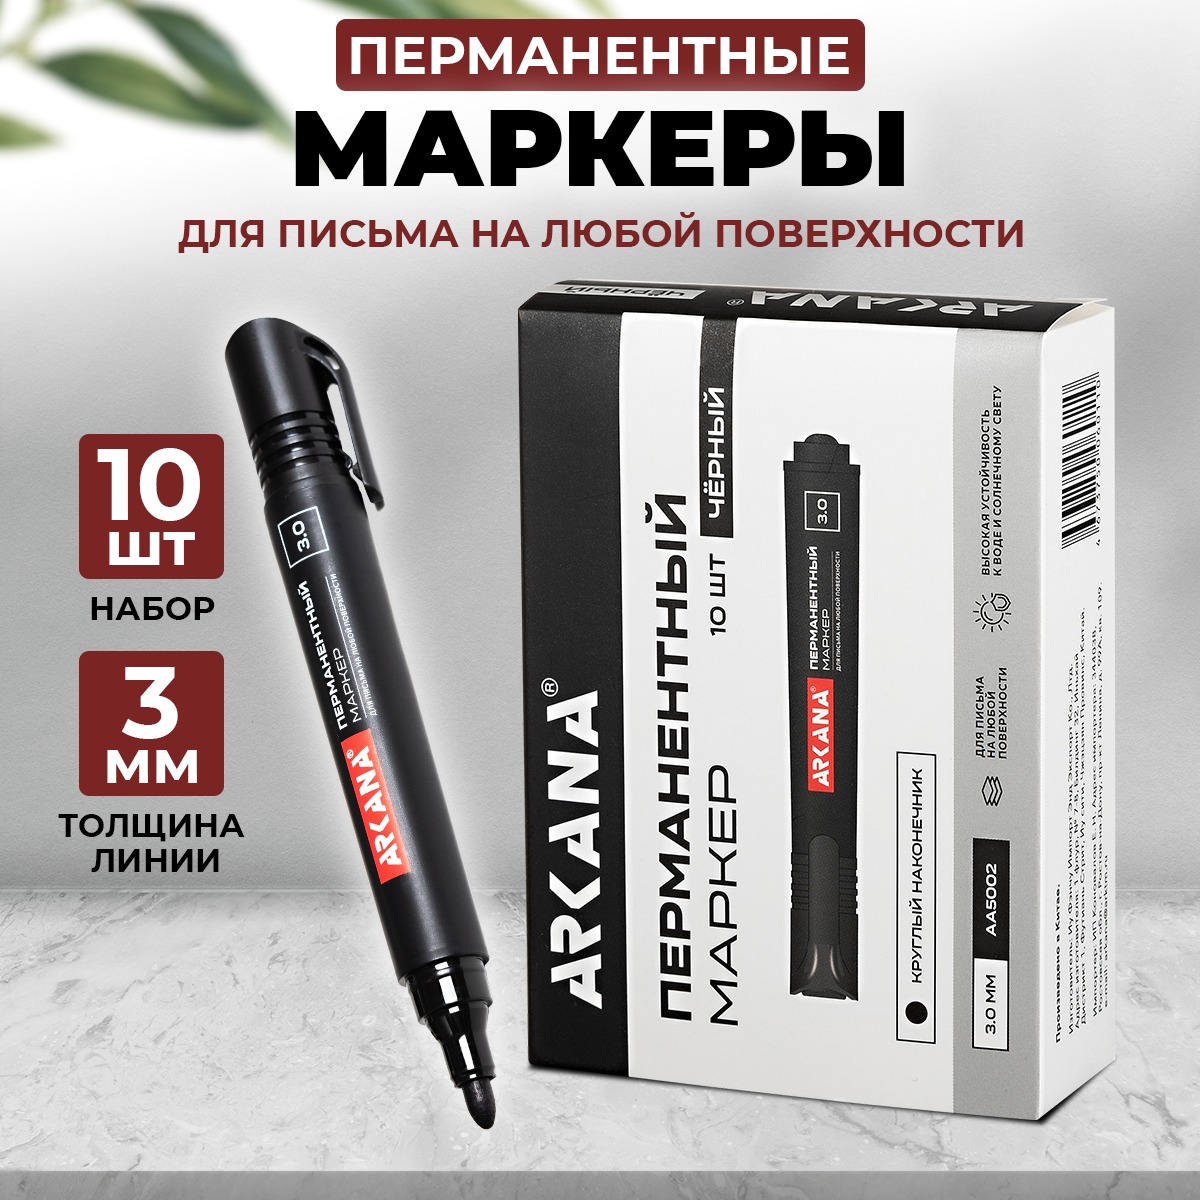 Набор перманентных маркеров ARKANA Premium, 10 шт, цвет черный